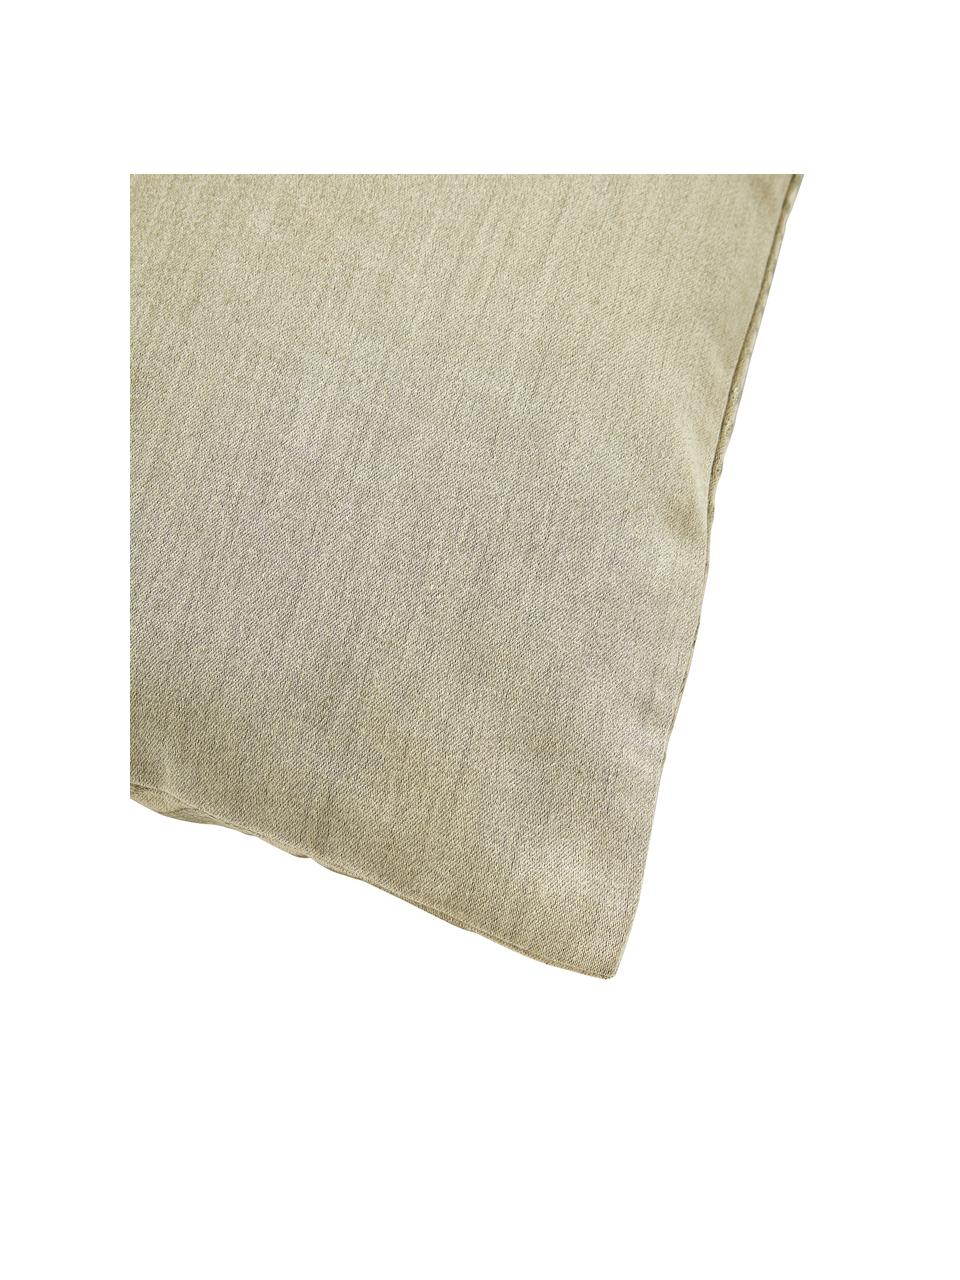 Baumwollsatin-Kissenhülle Nico mit besticktem Wellen-Muster, 100% Baumwollsatin, Beige, B 45 x L 45 cm